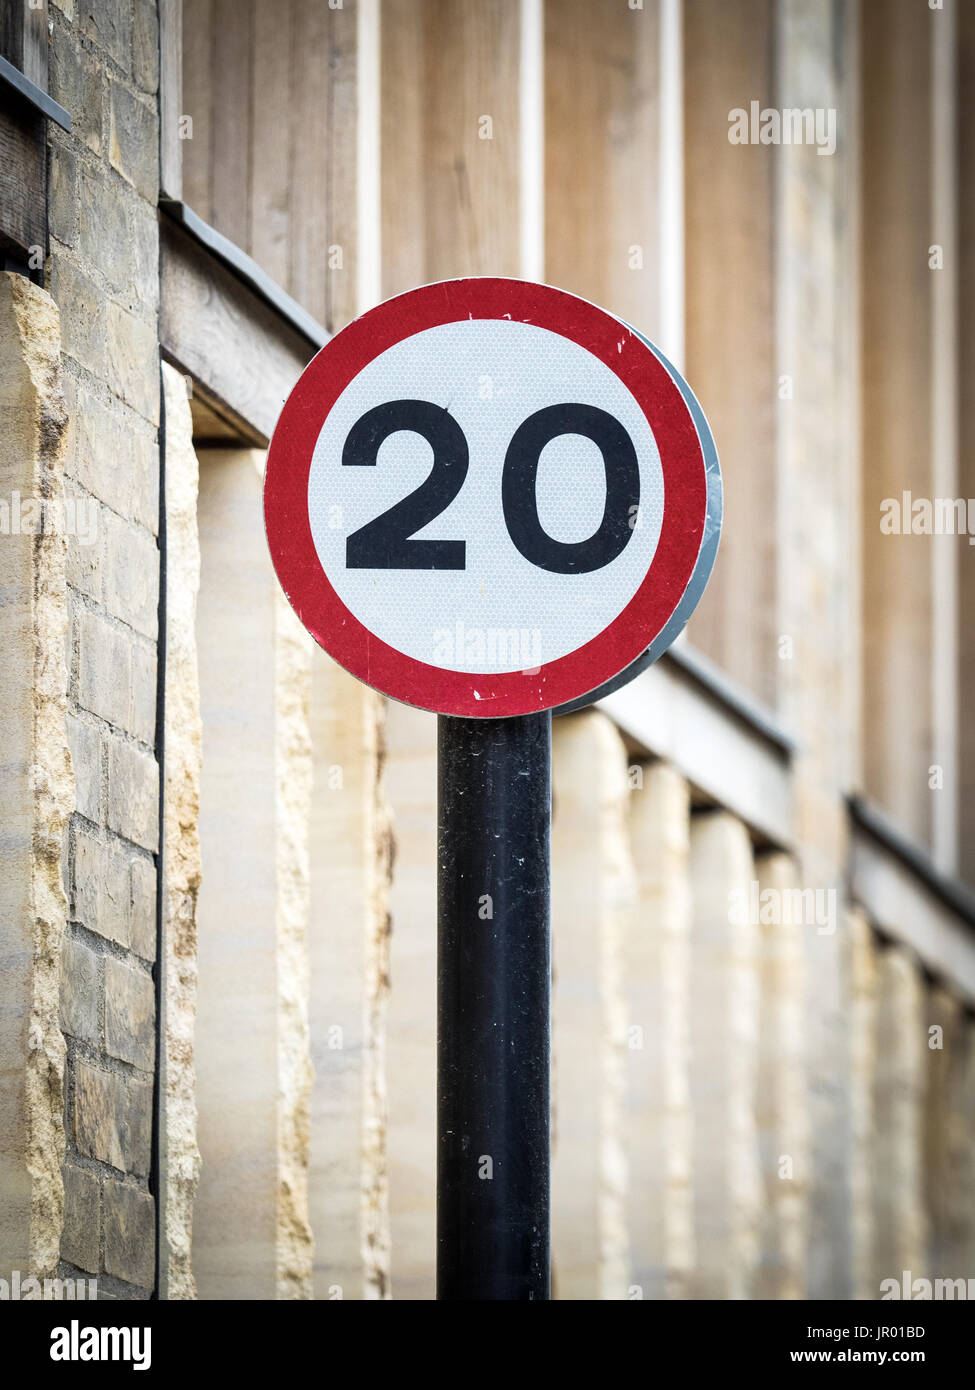 Señales de límite de velocidad de 20MPH - Zonas de restricción de velocidad de 20 mph son más comunes en las principales ciudades del Reino Unido ahora Foto de stock